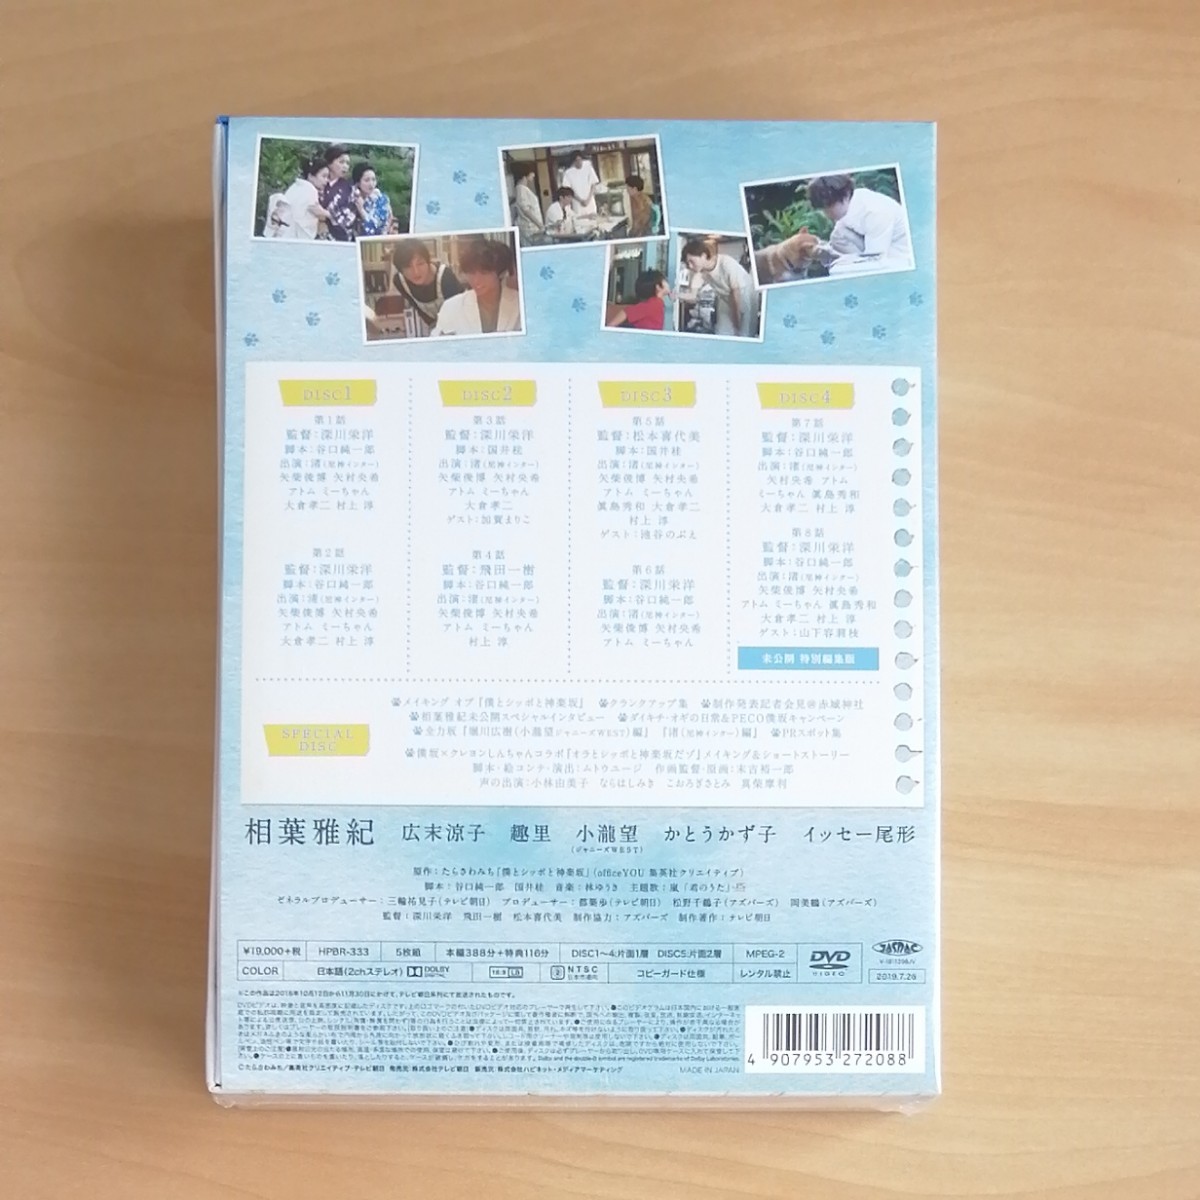 新品未開封★僕とシッポと神楽坂 DVD-BOX〈5枚組〉初回生産限定